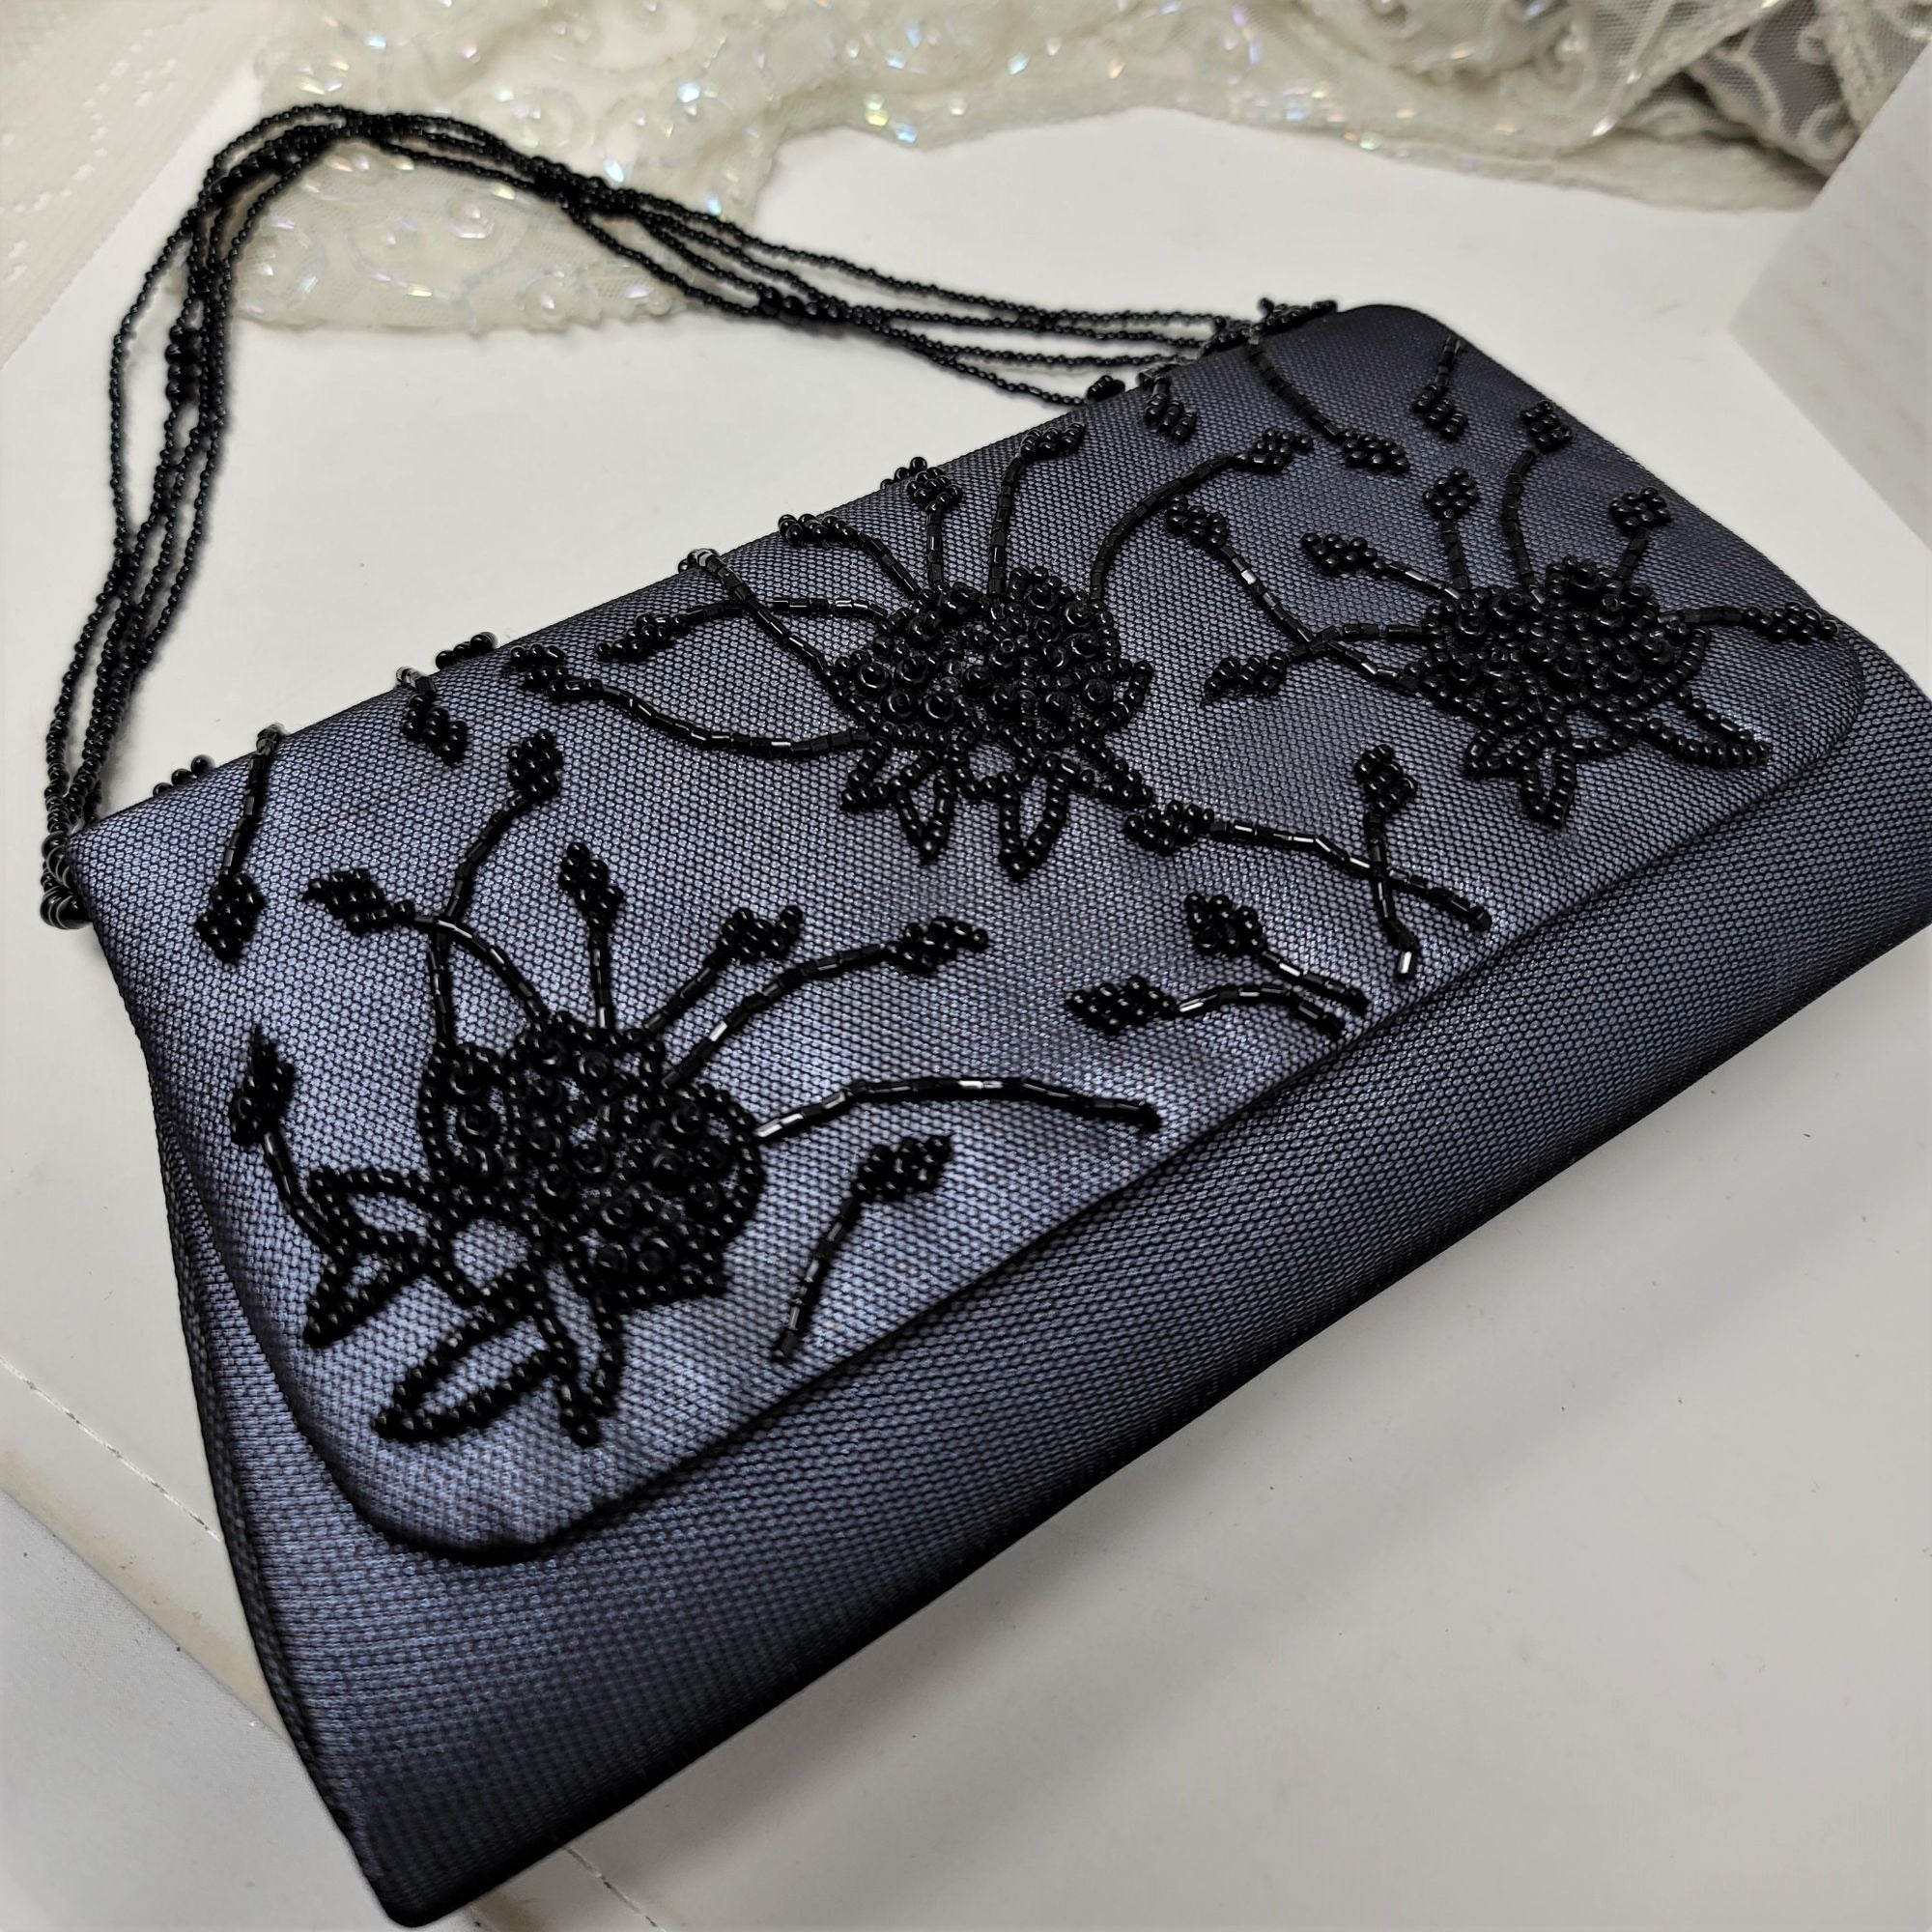 Black Beaded Evening Handbag Purse Floral Pattern